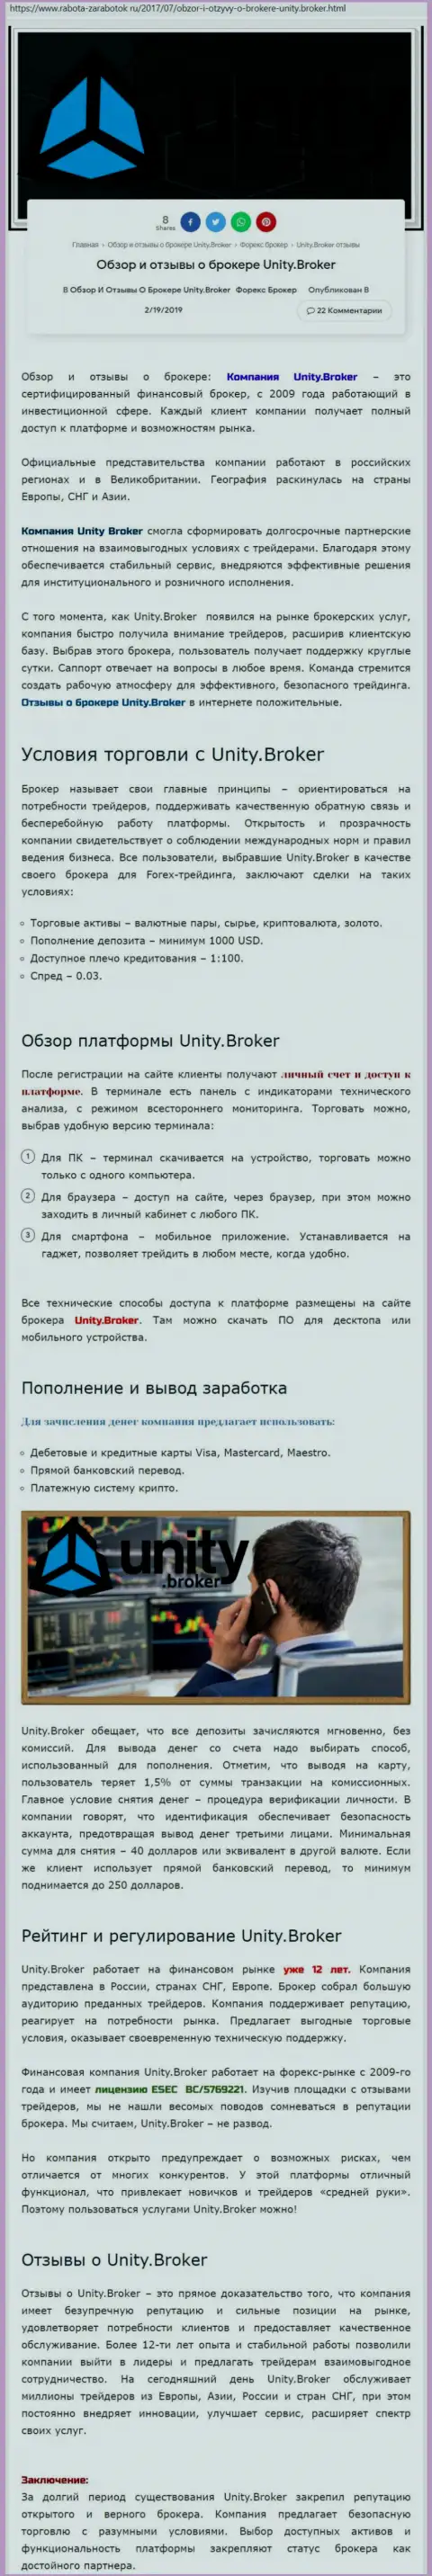 Обзорная инфа Форекс брокерской компании УнитиБрокер на информационном портале rabota zarabotok ru